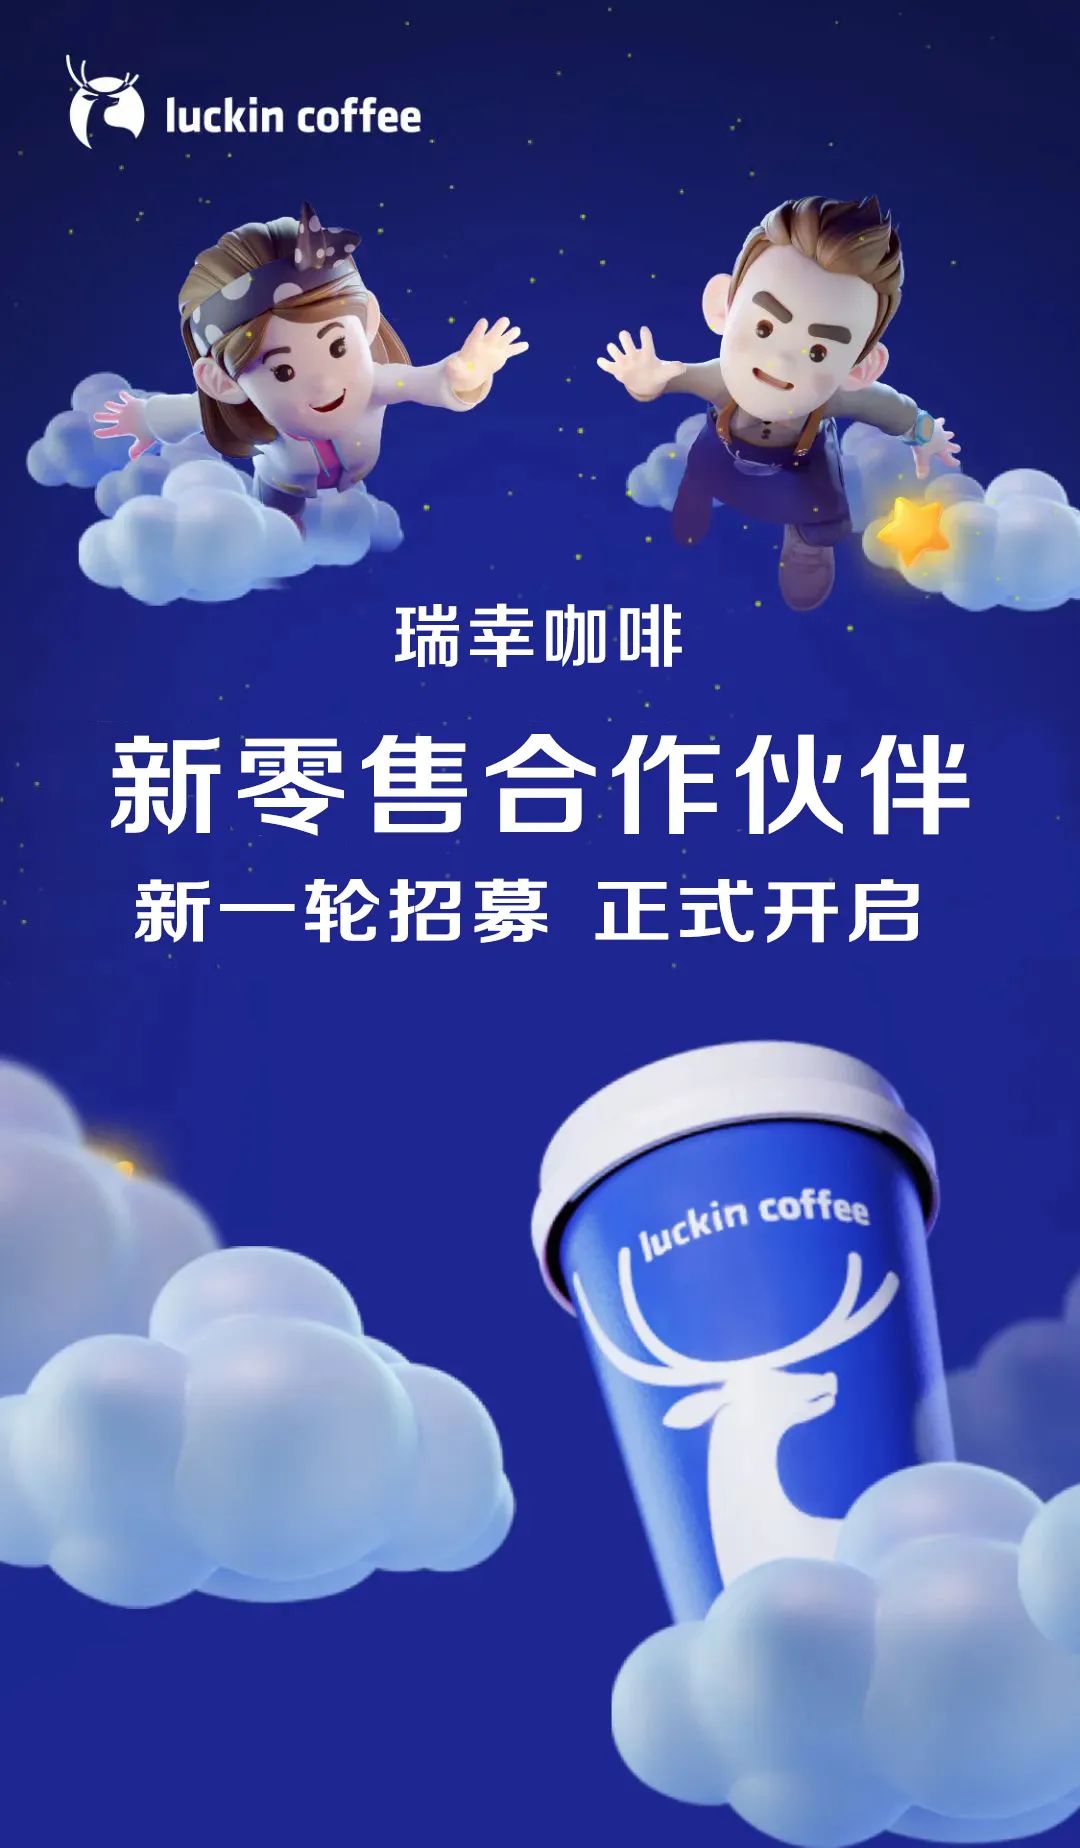 中国咖啡战：瑞幸咖啡挑战星巴克_凤凰网